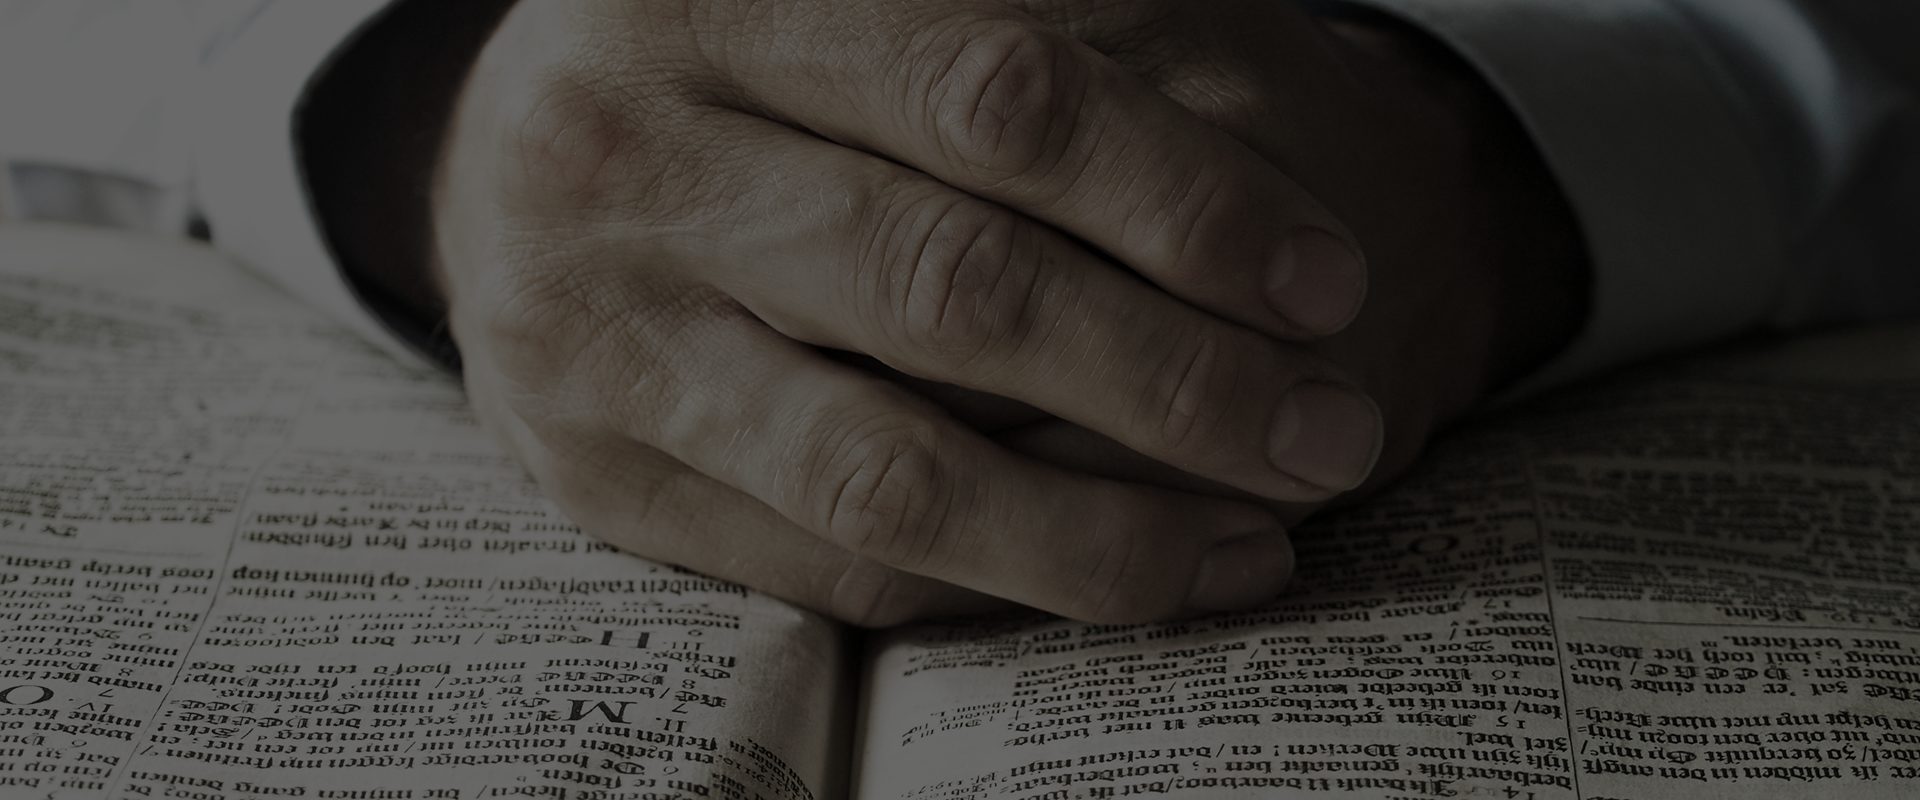 praying-hands-bible-(1)